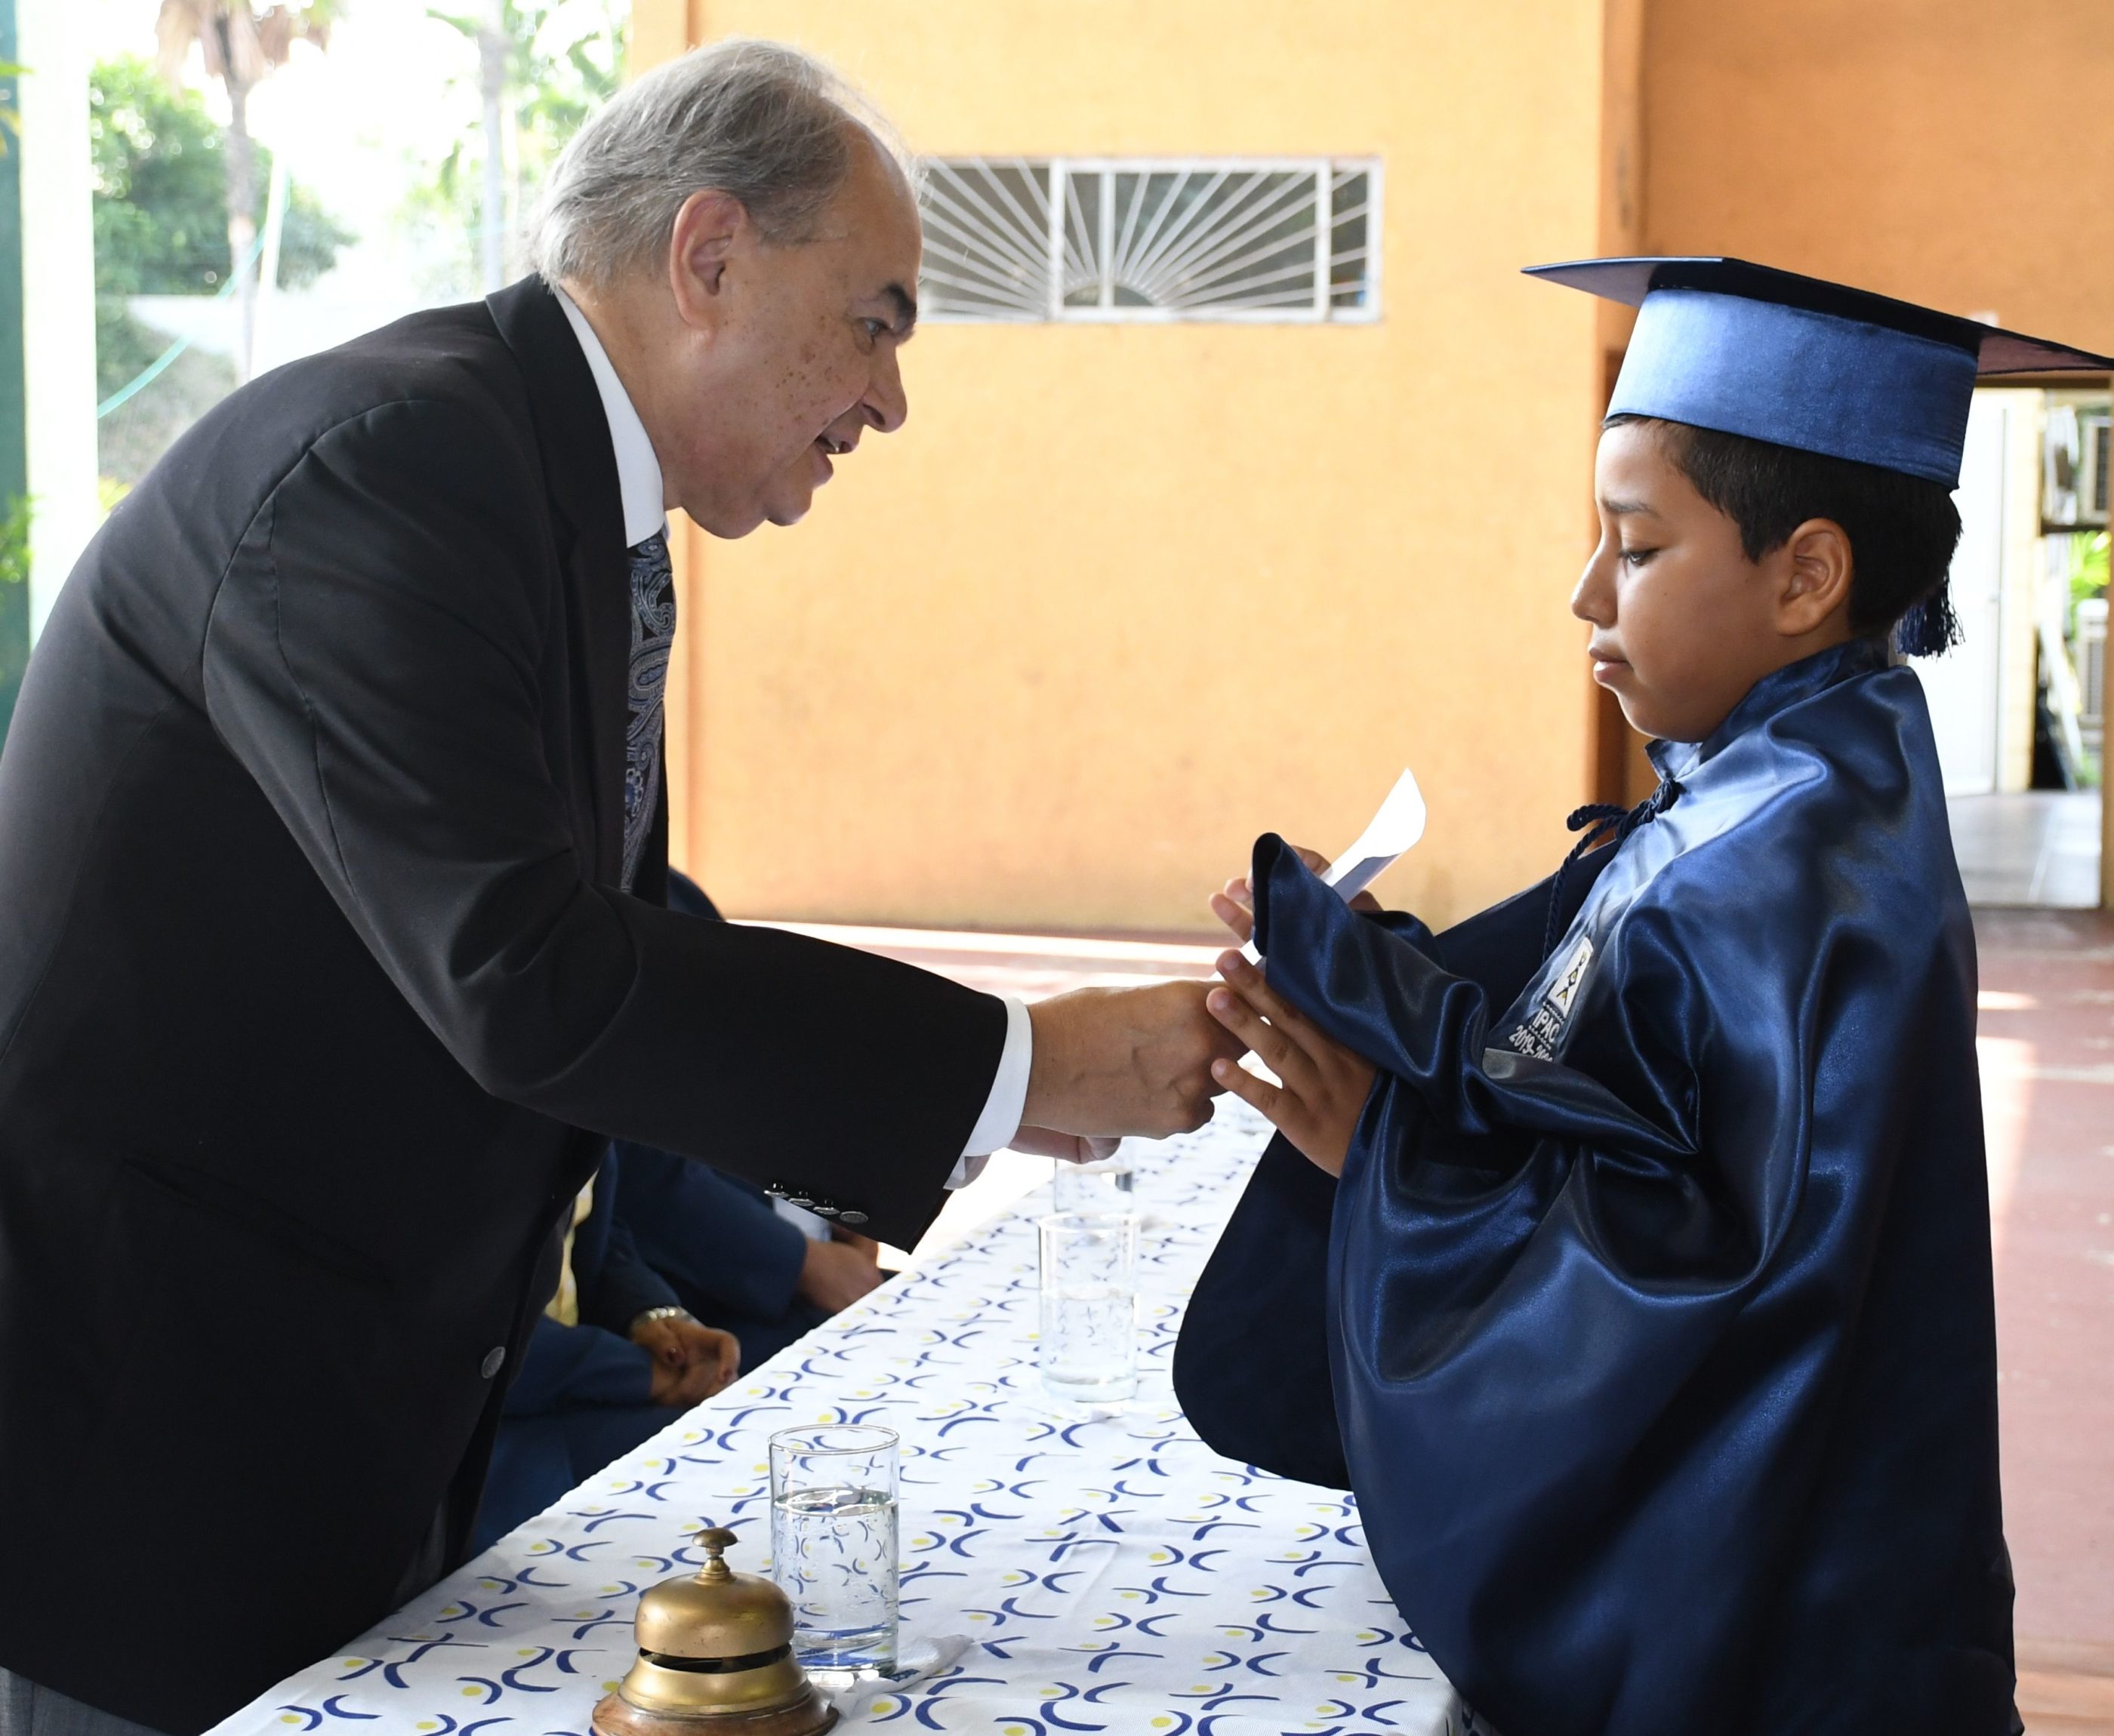 Entrega de Diploma al estudiante con m†s alto promedio en su trayectoria estudiantil Marcos Romero Zajia